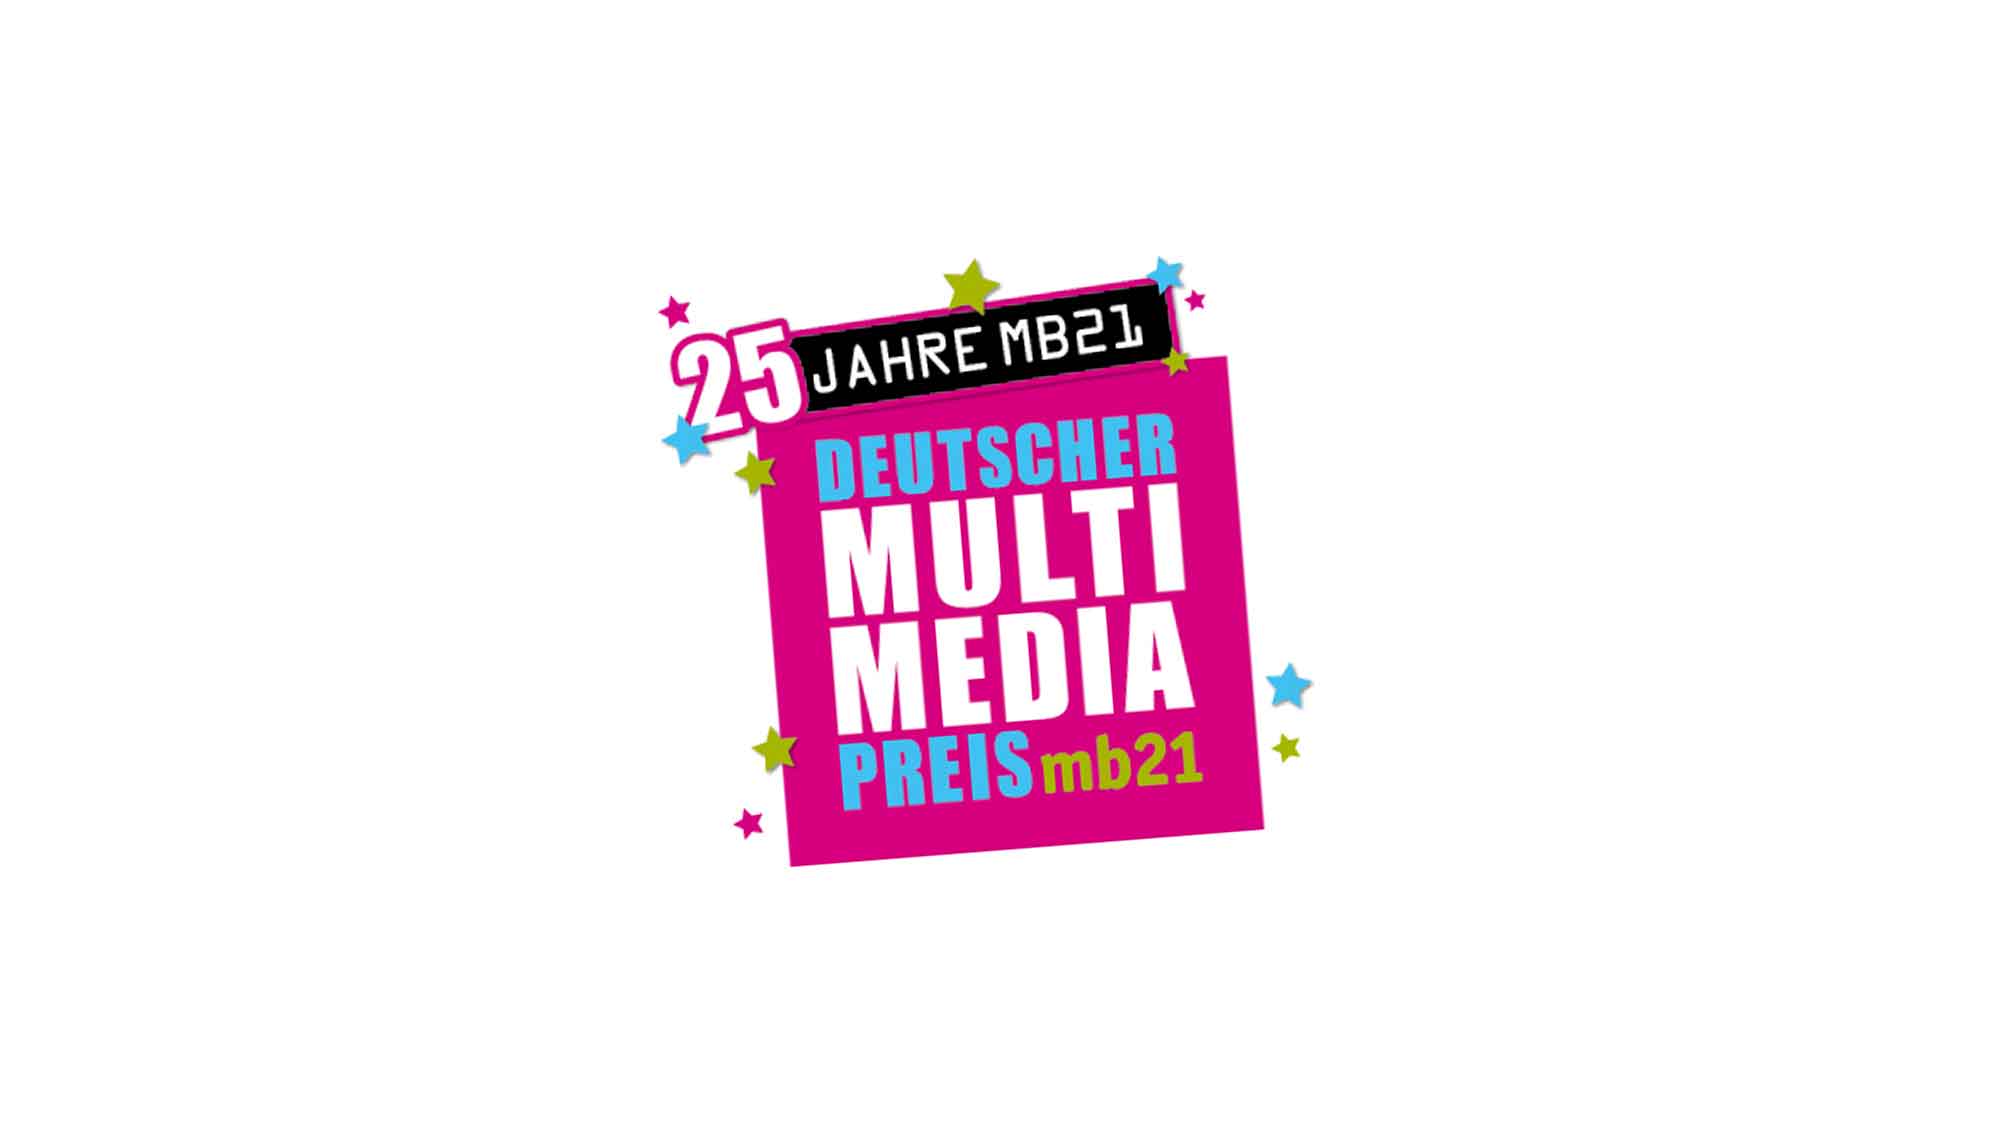 Dresden wird zum Zentrum für junge digitale Medienkultur, Deutscher Multimediapreis »mb21«